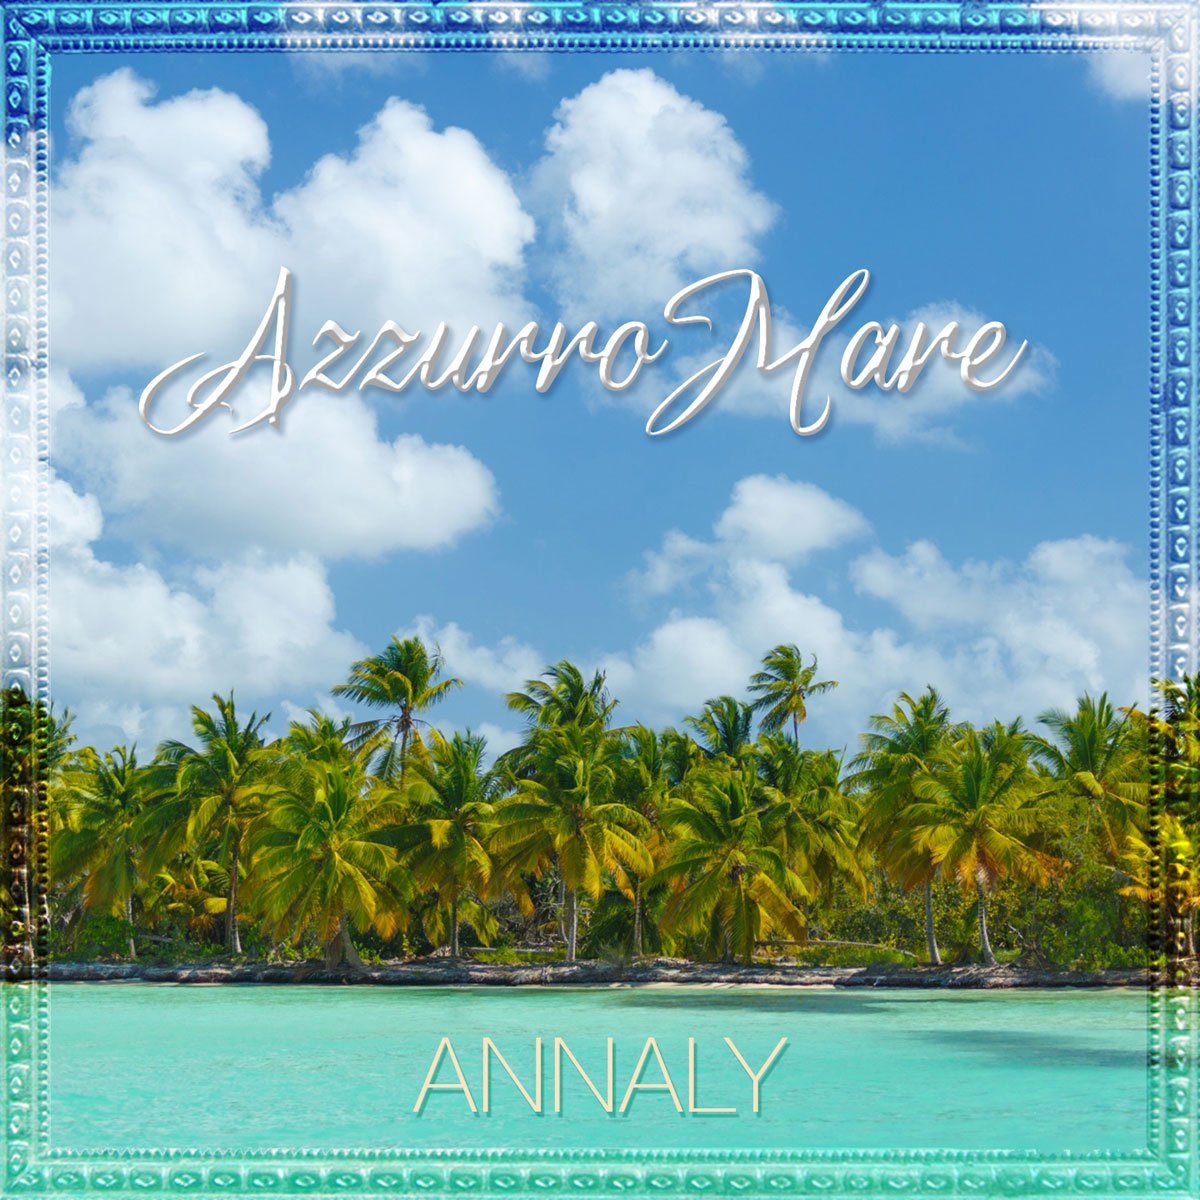 Dal 20 ottobre 2023 , disponibile in digitale e in radio “AzzurroMare”, il nuovo singolo di Annaly